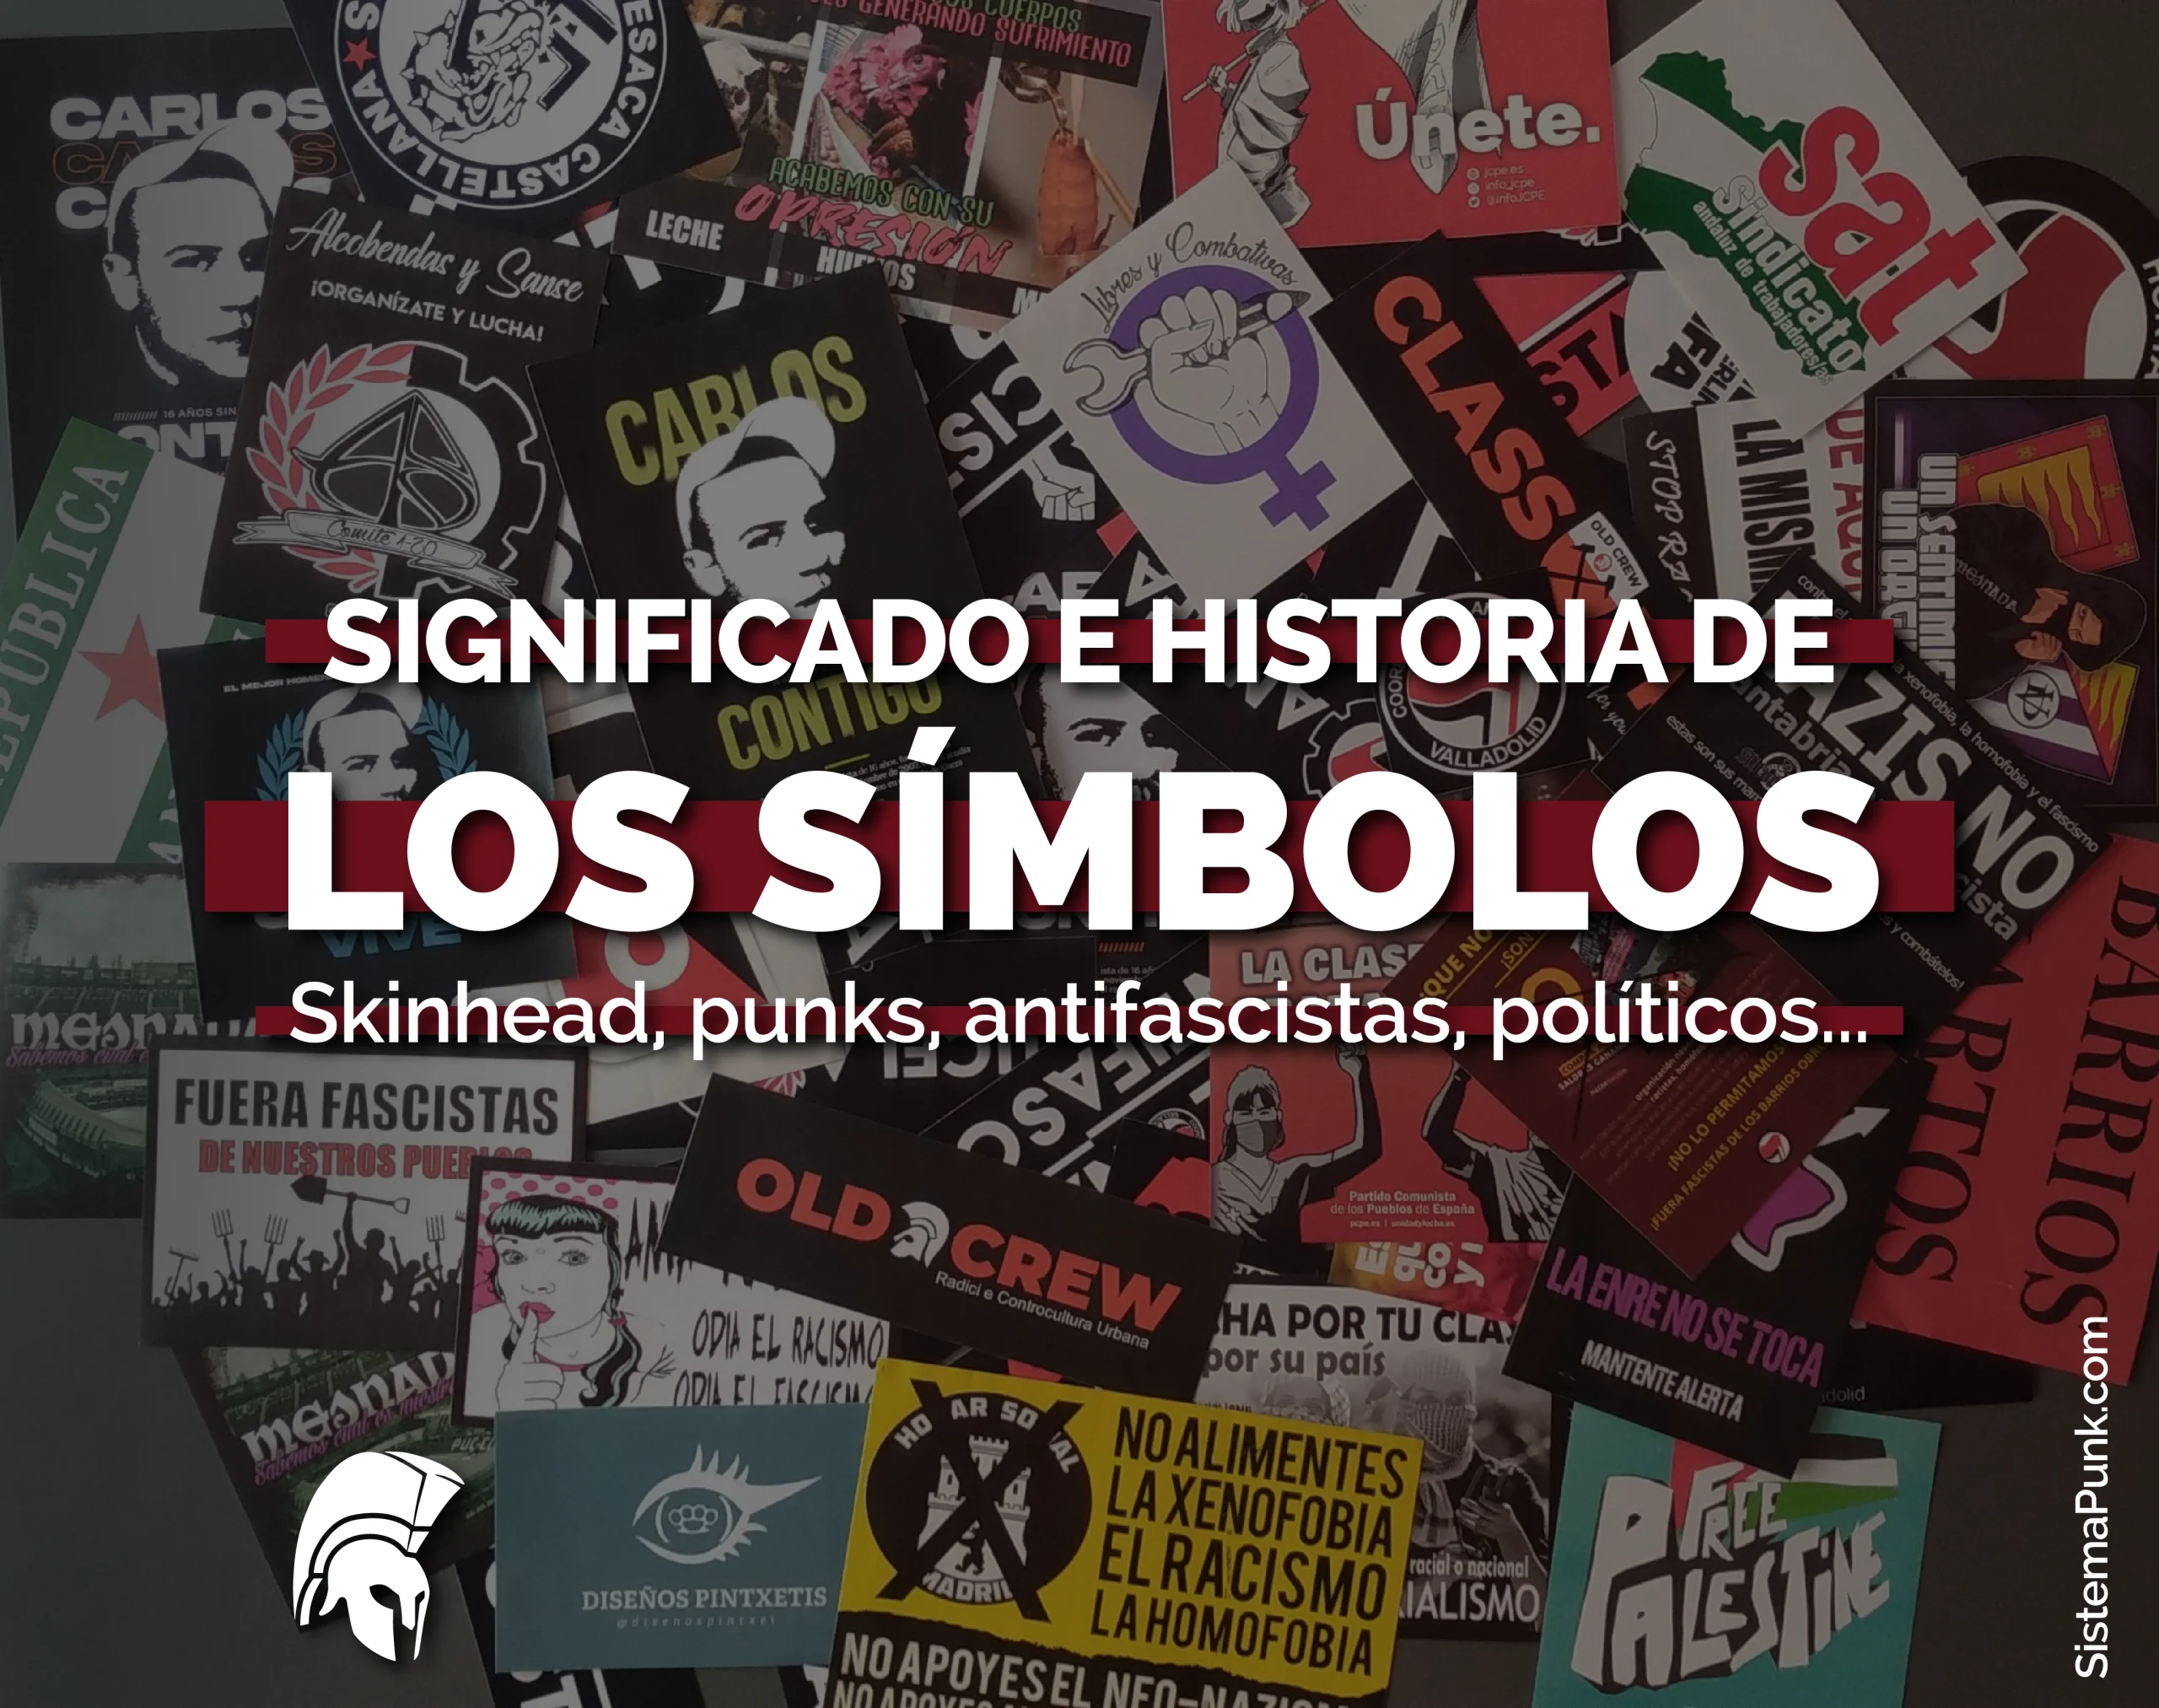 Símbolos skinhead, punks y antifascistas